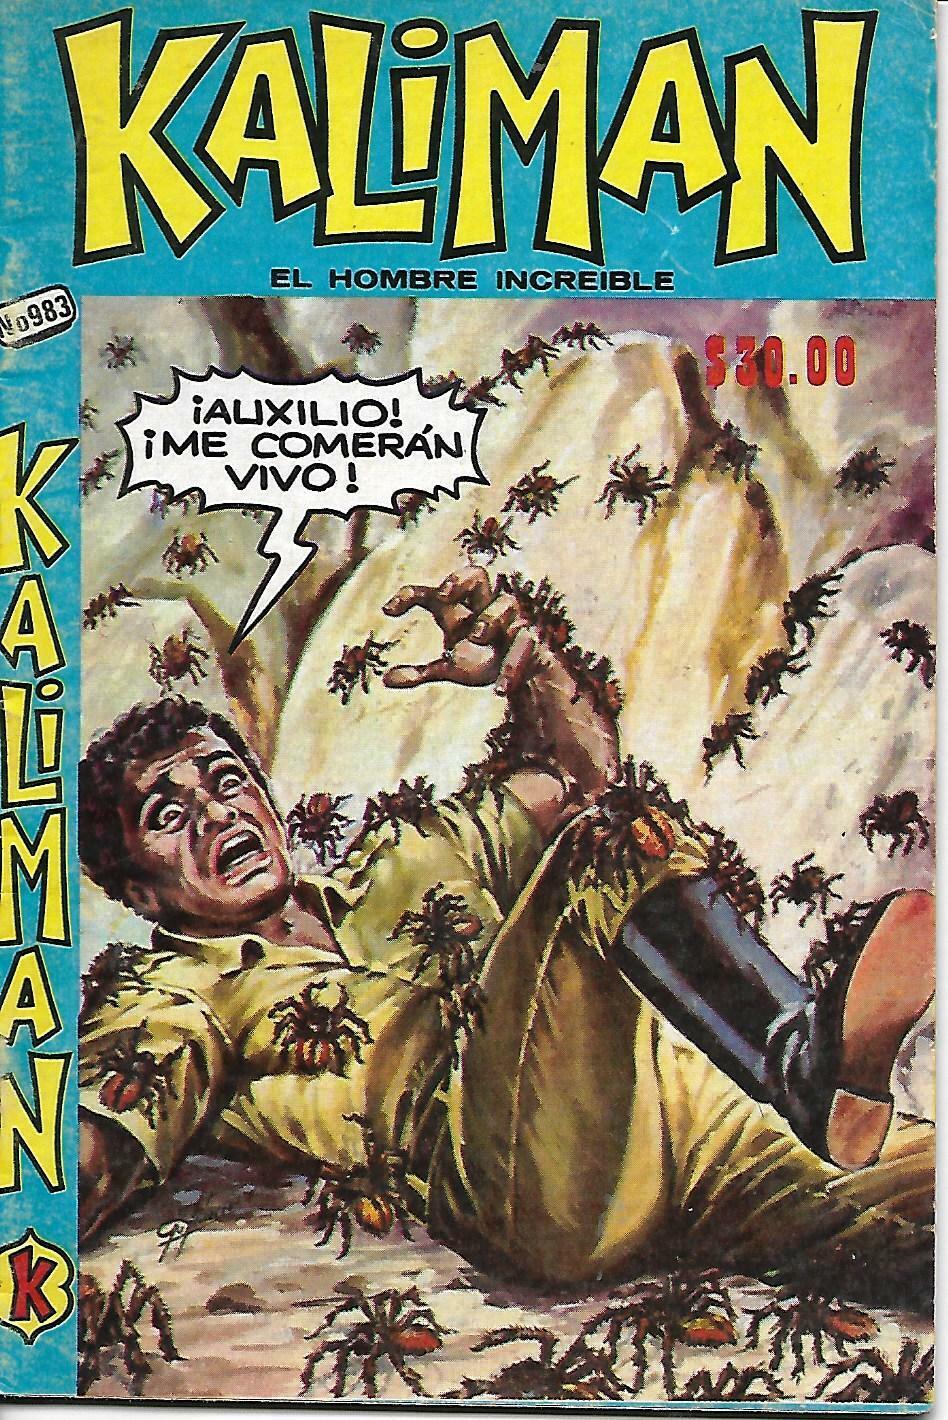 Kaliman El Hombre Increible #983 - Septiembre 28, 1984 - Mexico 